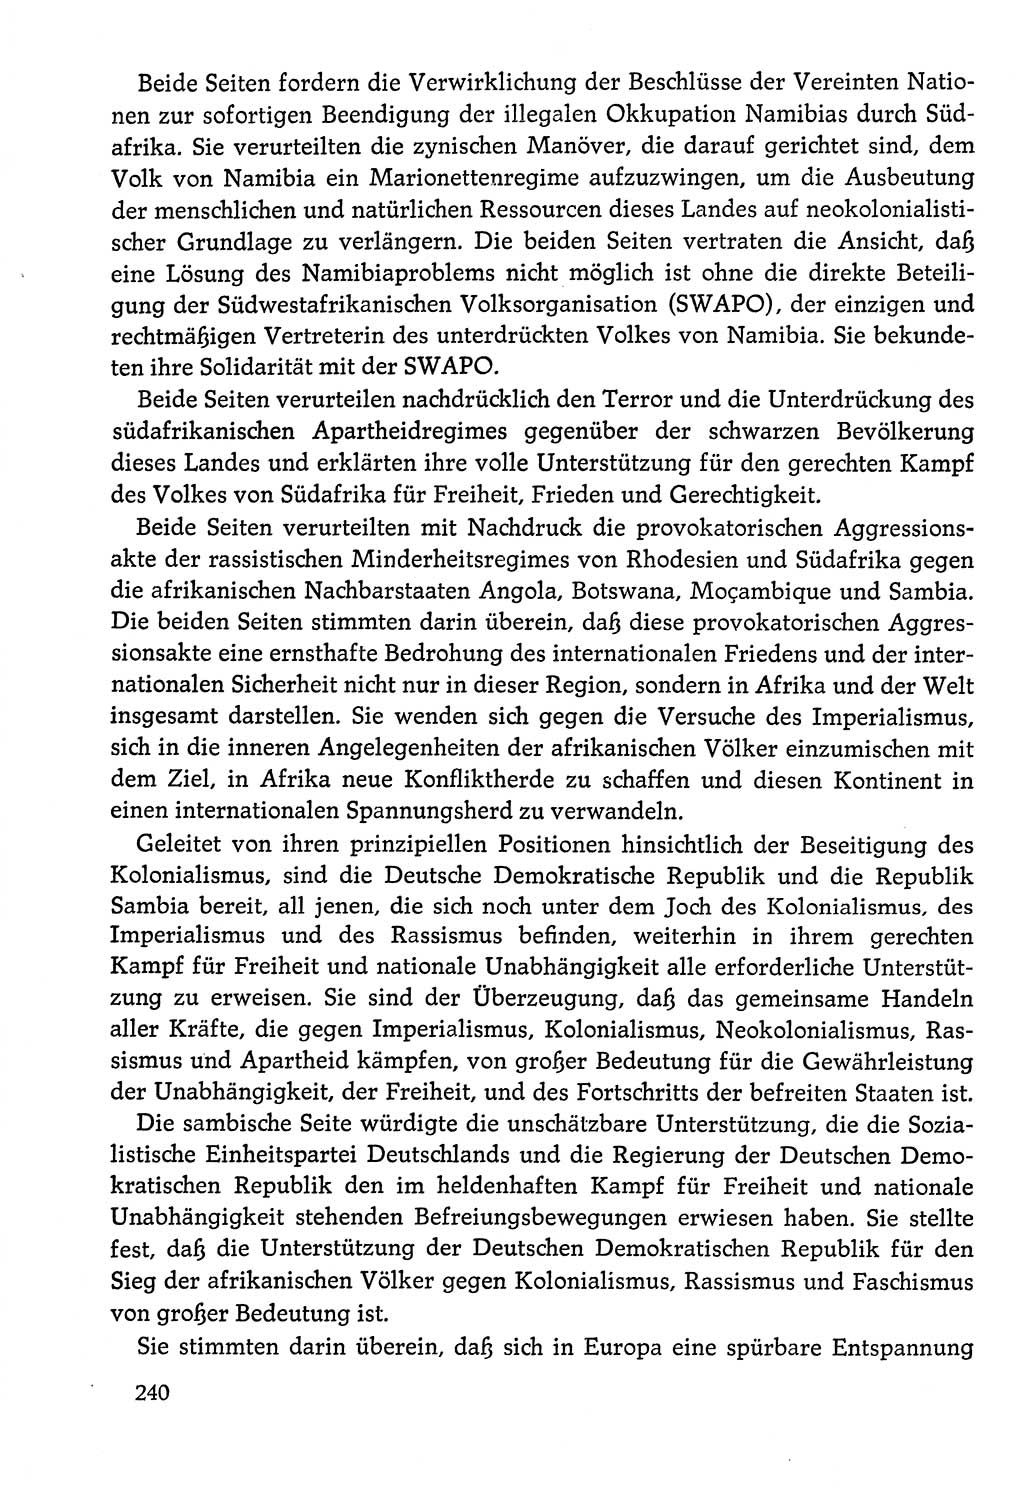 Dokumente der Sozialistischen Einheitspartei Deutschlands (SED) [Deutsche Demokratische Republik (DDR)] 1978-1979, Seite 240 (Dok. SED DDR 1978-1979, S. 240)